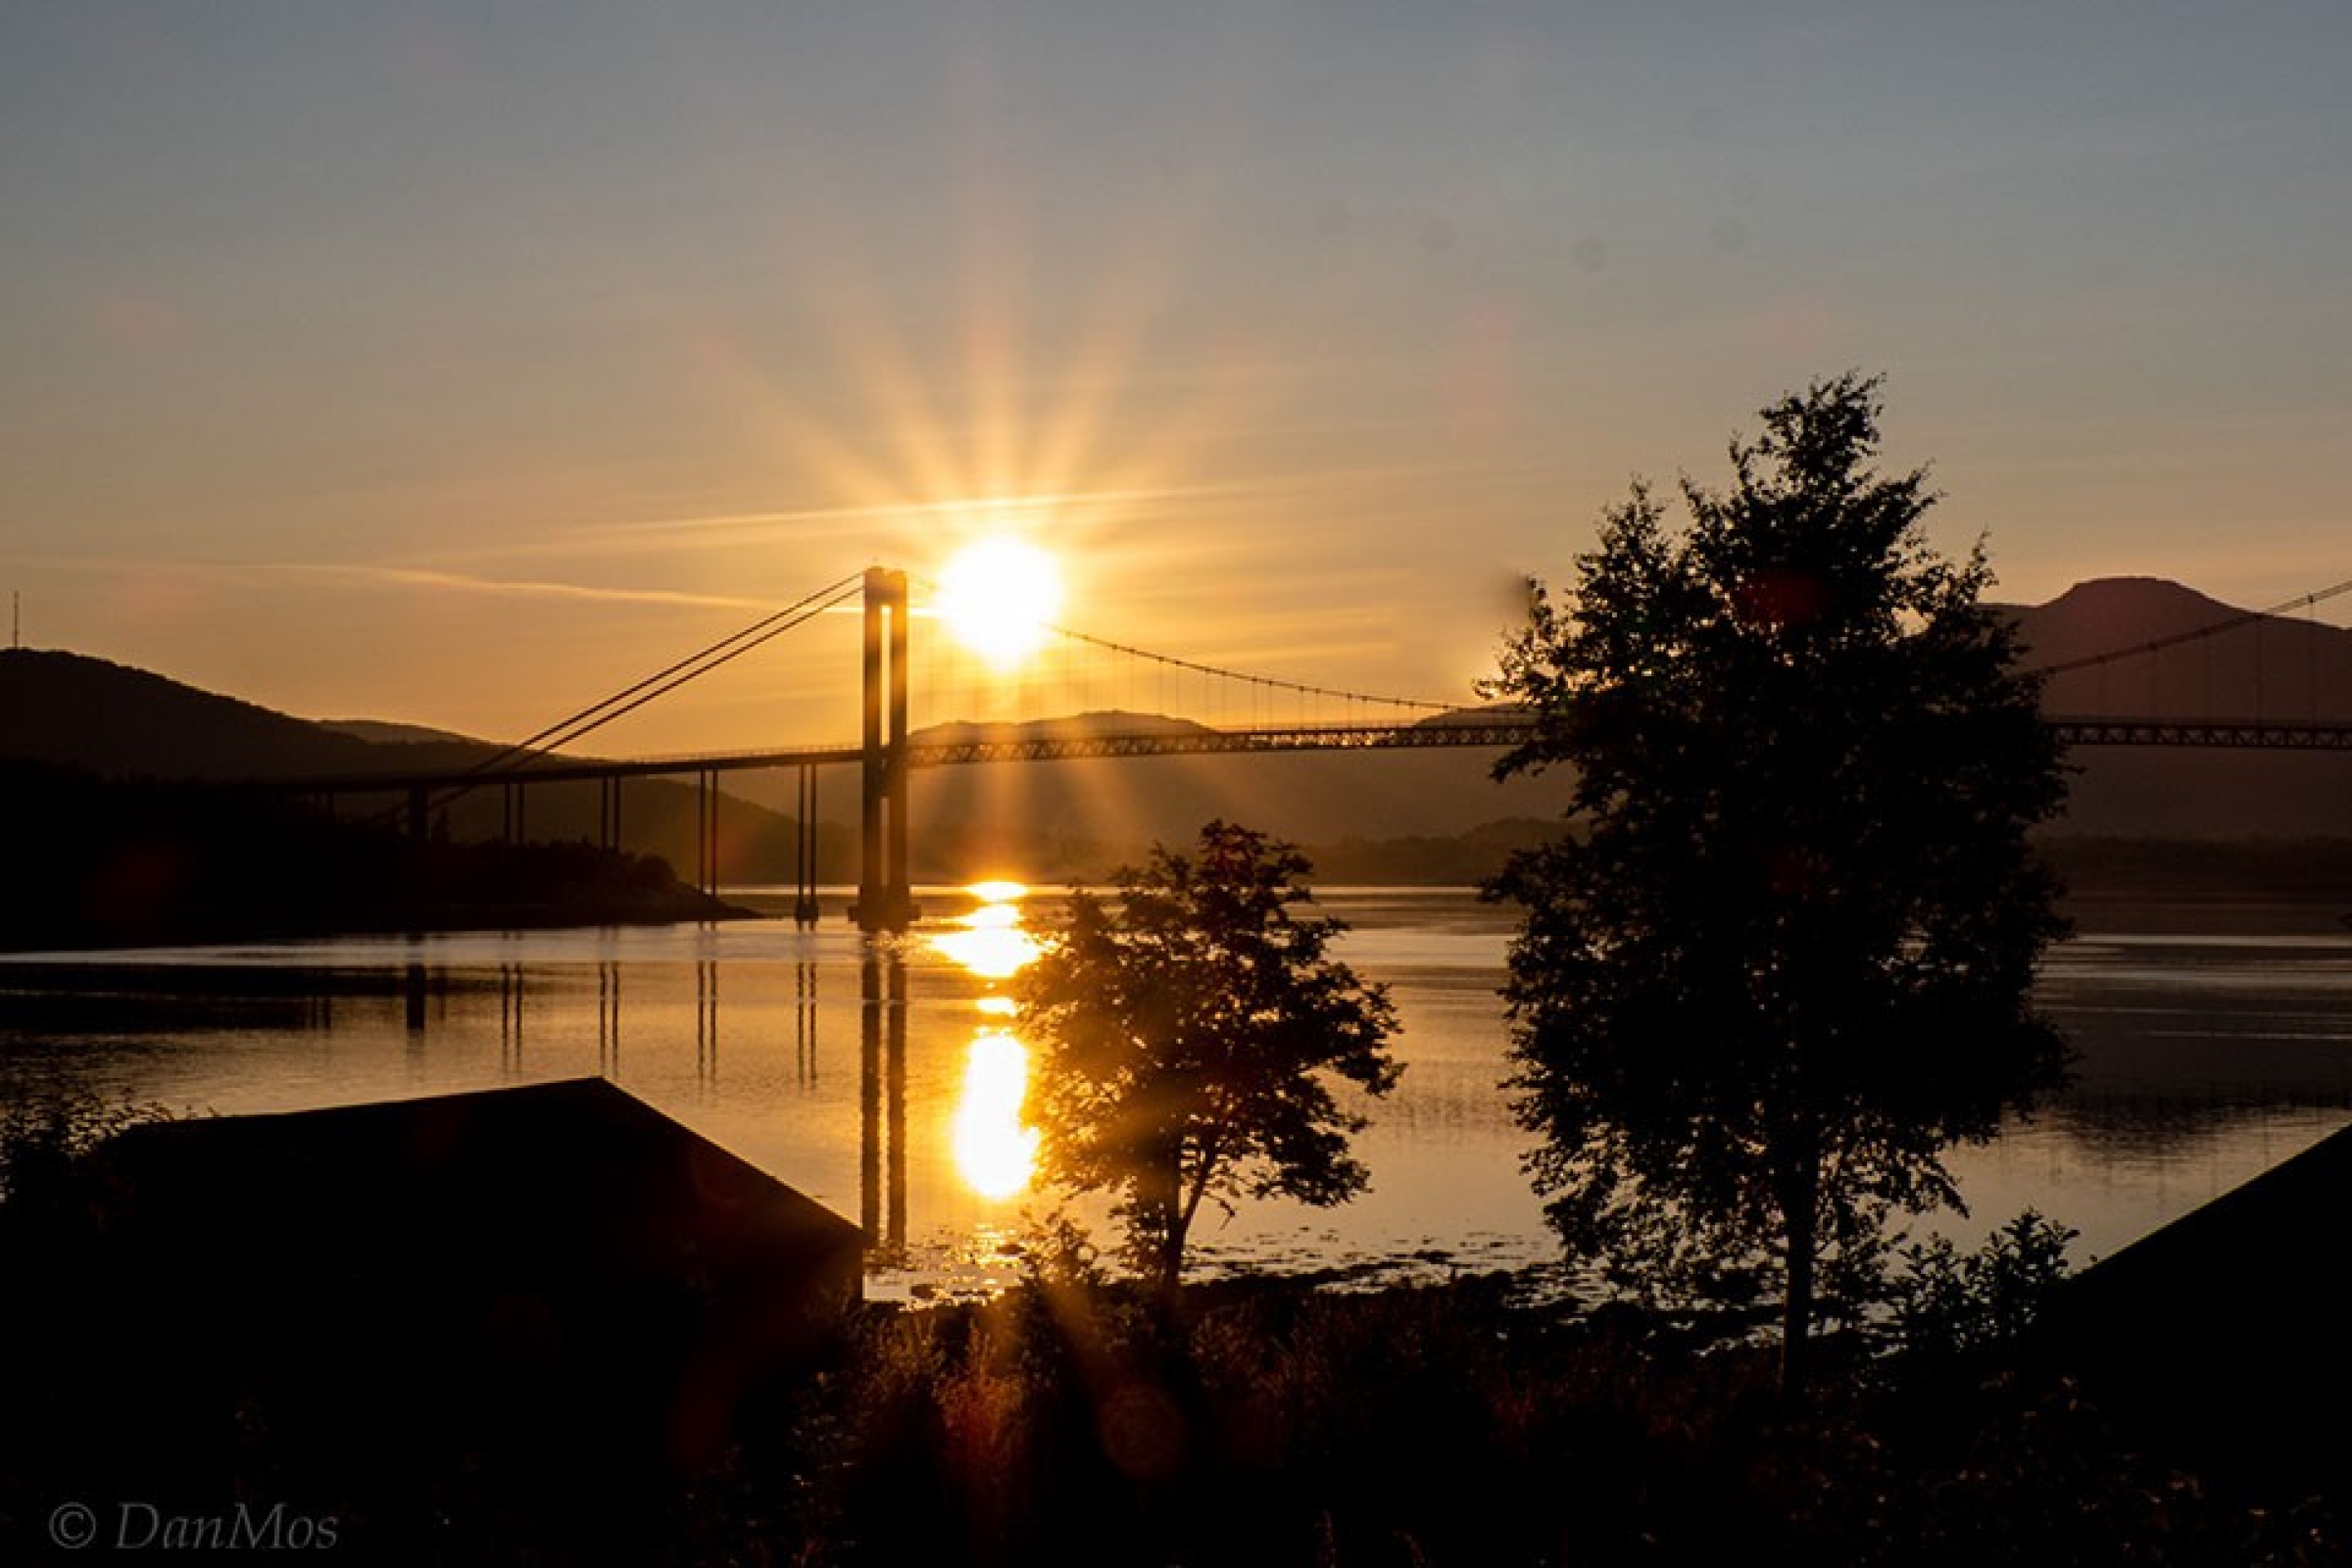 Bei der Velotour vom Nordkap zurück in die Schweiz überquert man einige Brücken. Diese hier bei einem schönen Sonnenuntergang.